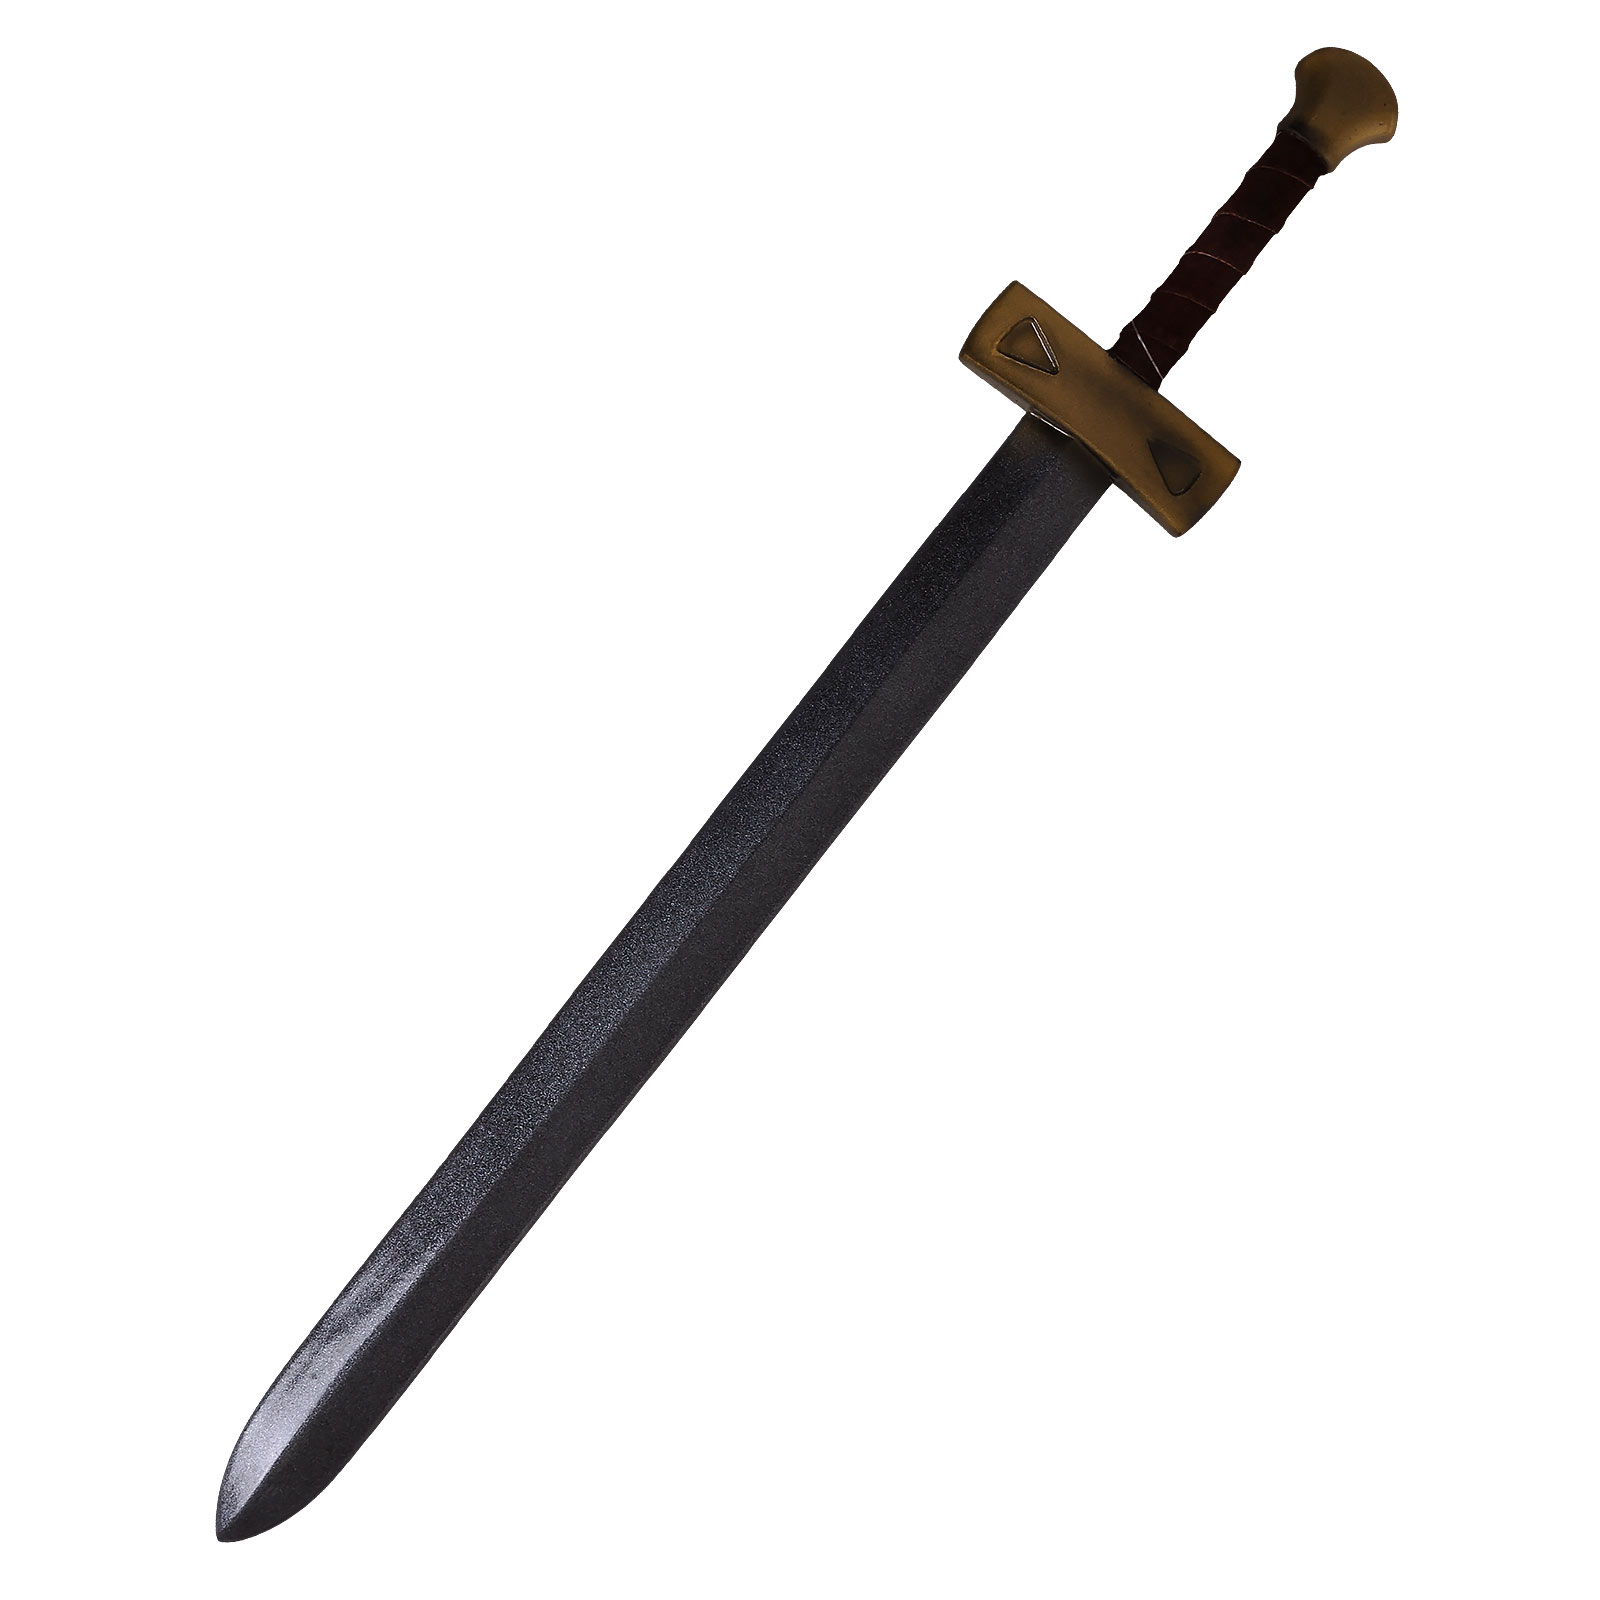 LARP - Ready for Battle Sword Knight foam weapon